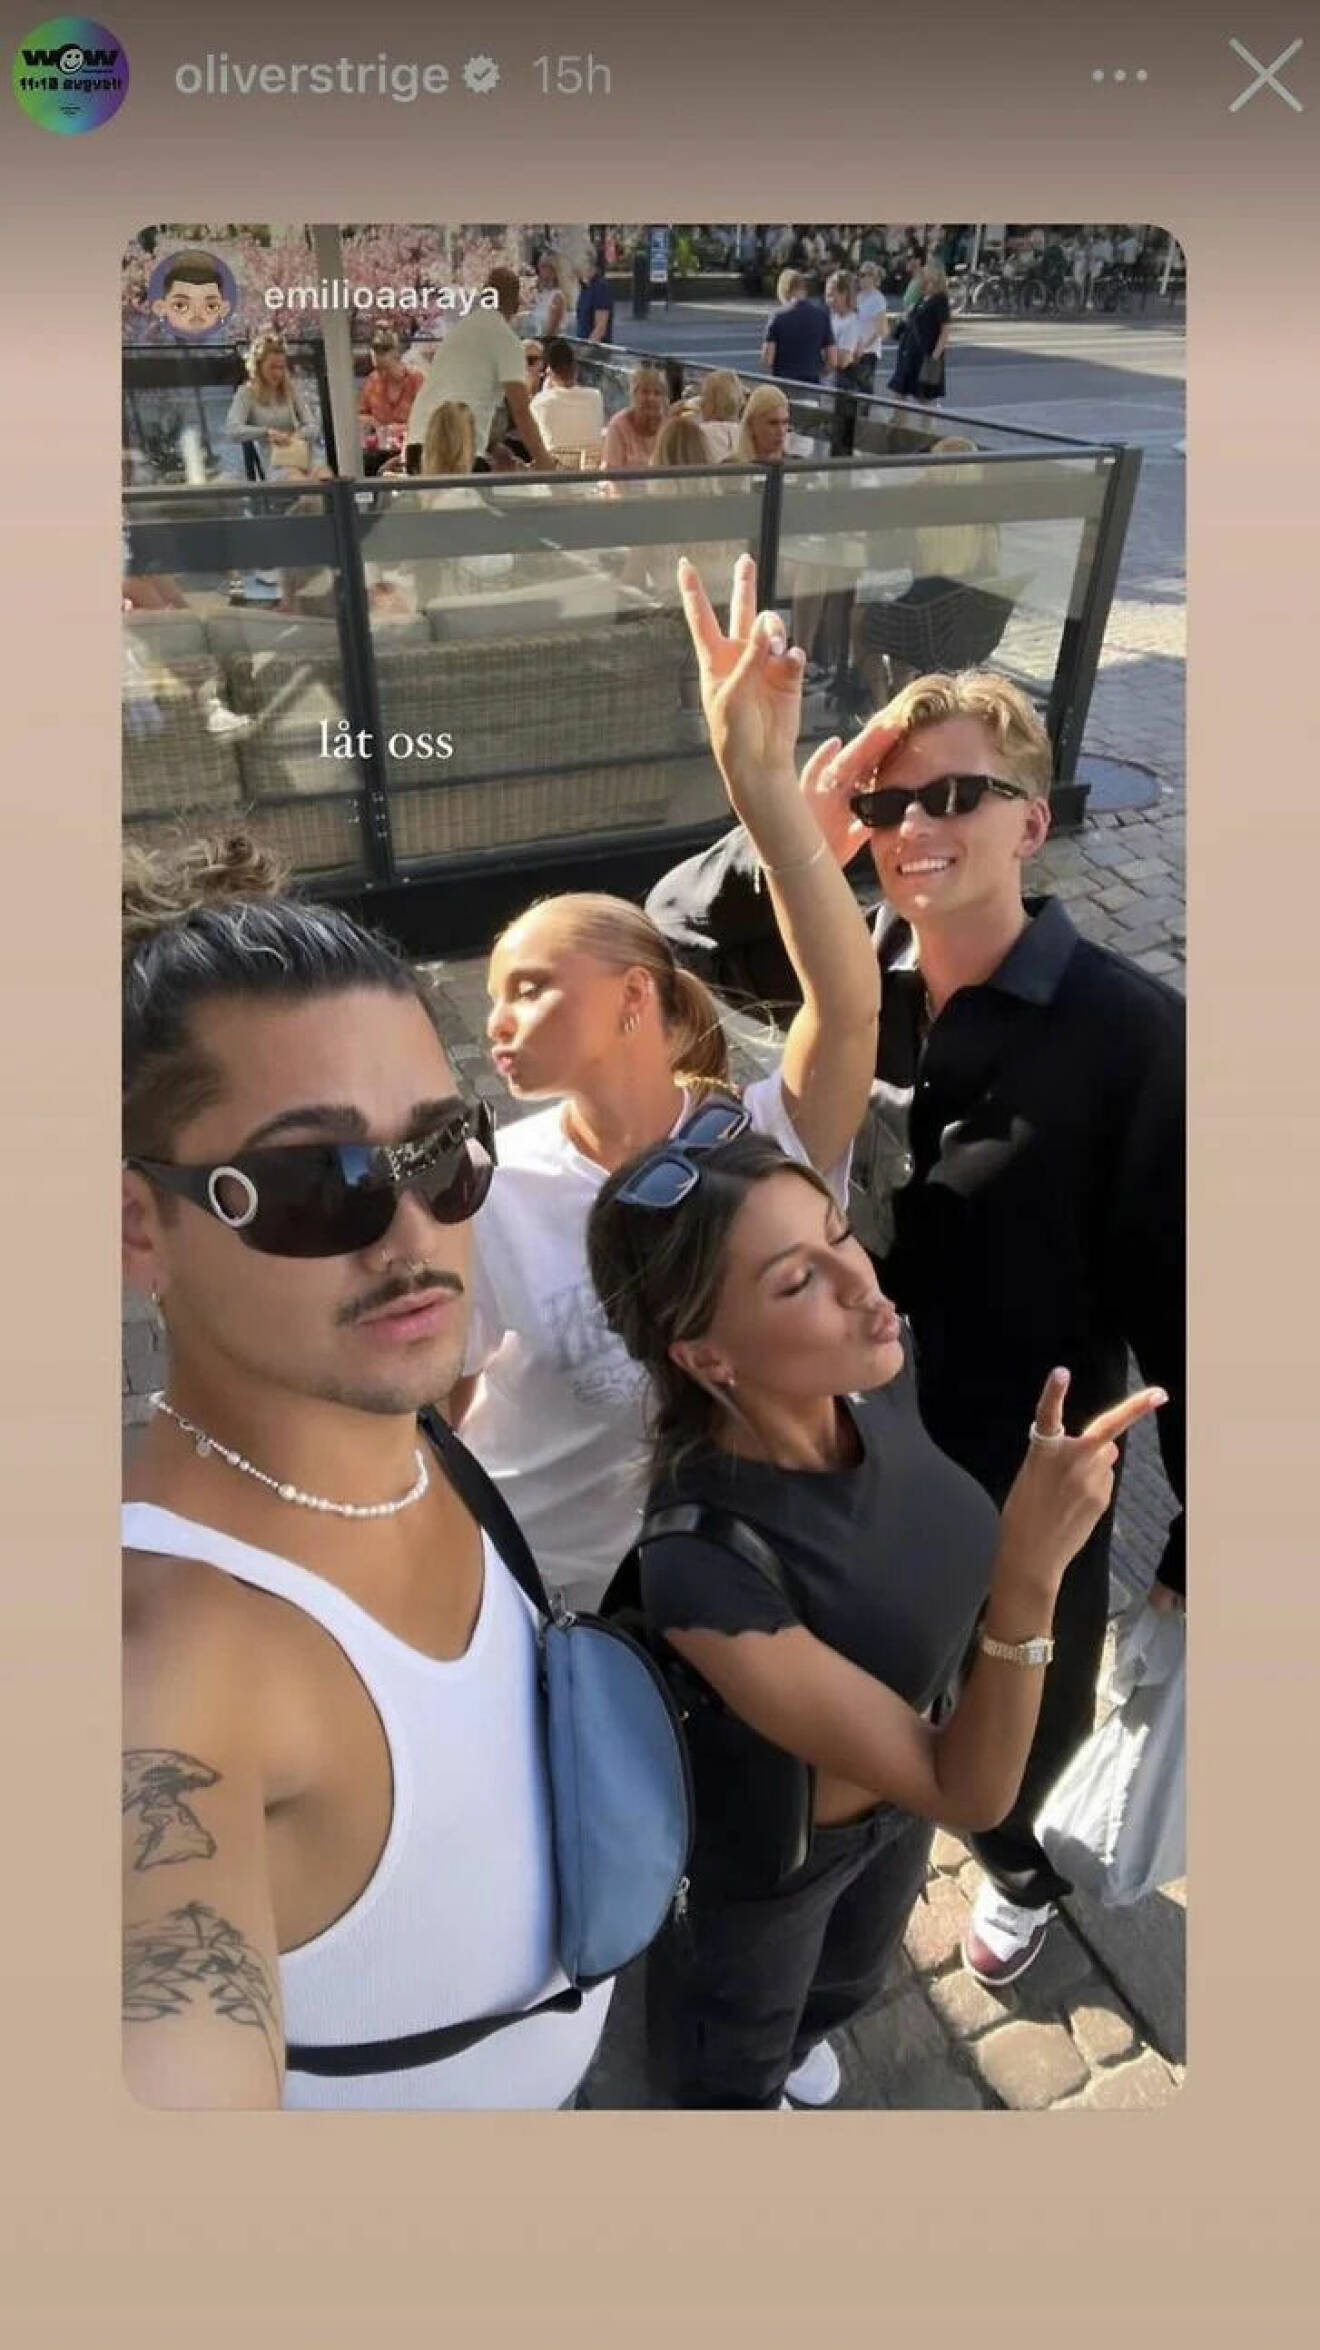 Oliver Strige repostade en bild på hela gänget samlat, från Emilios Instagram story.